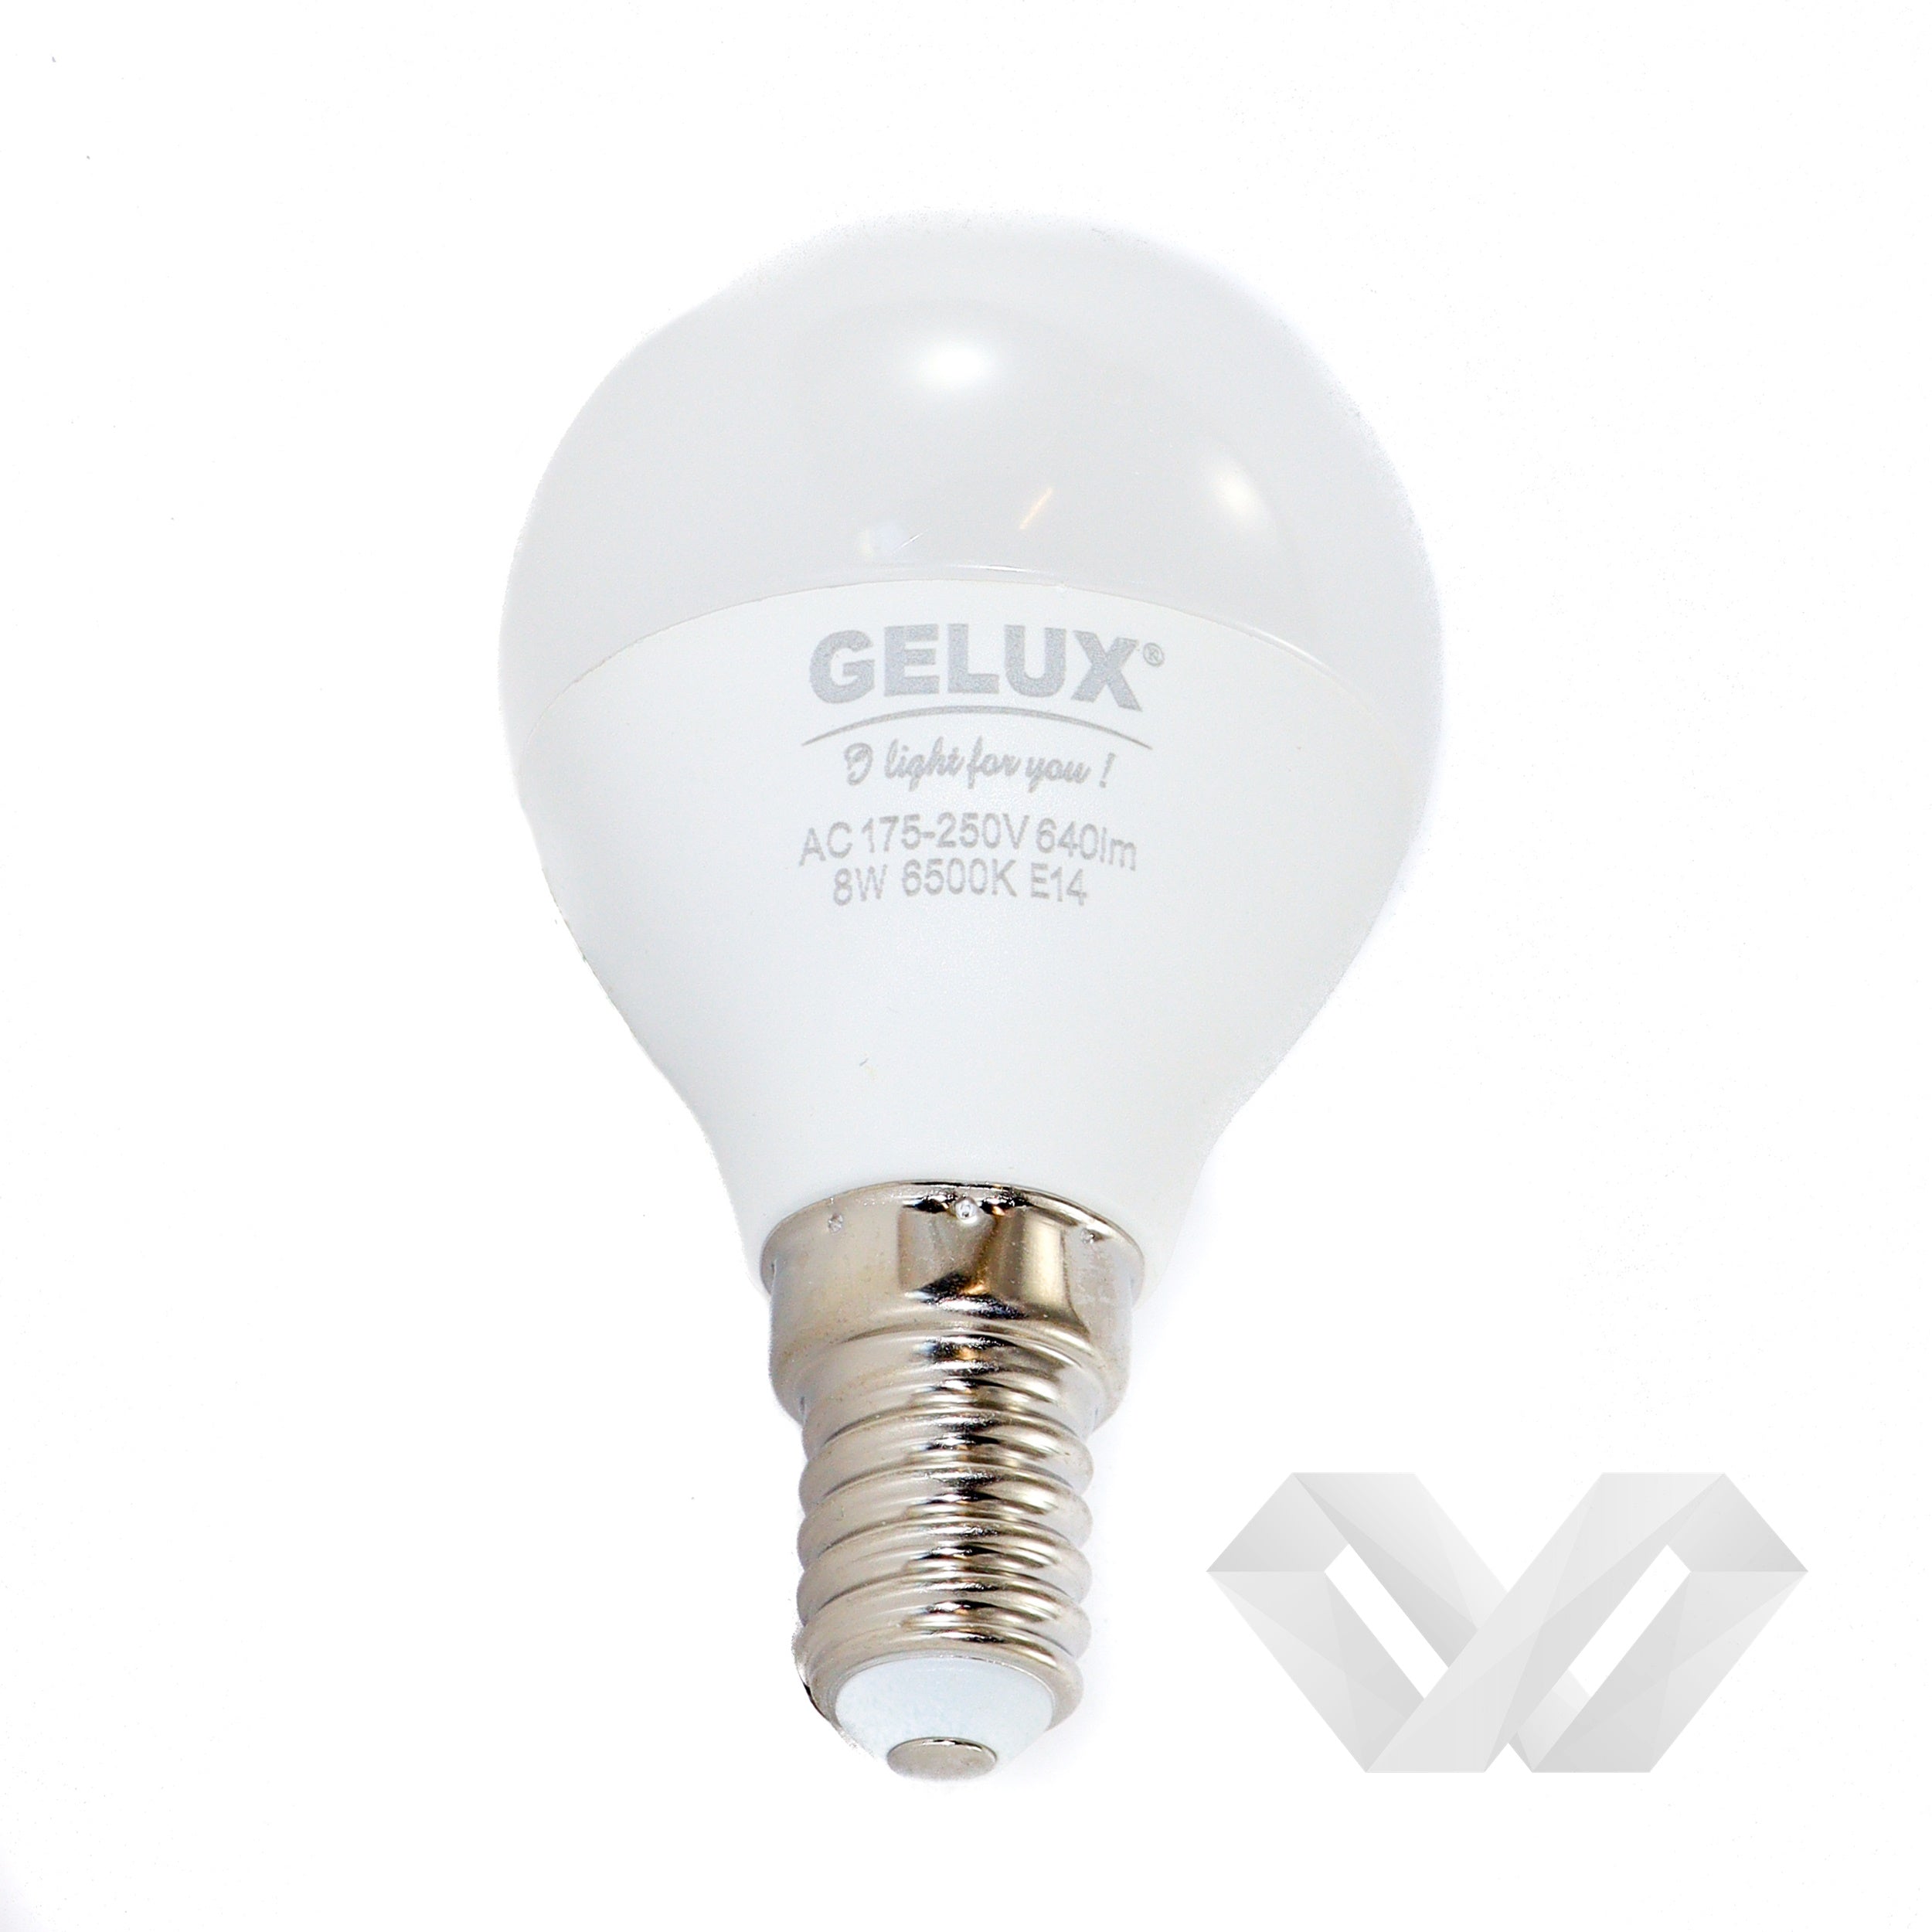 Bec LED Sferic 5W E14 ECOLED, echivalent 40W lumina rece, Gelux